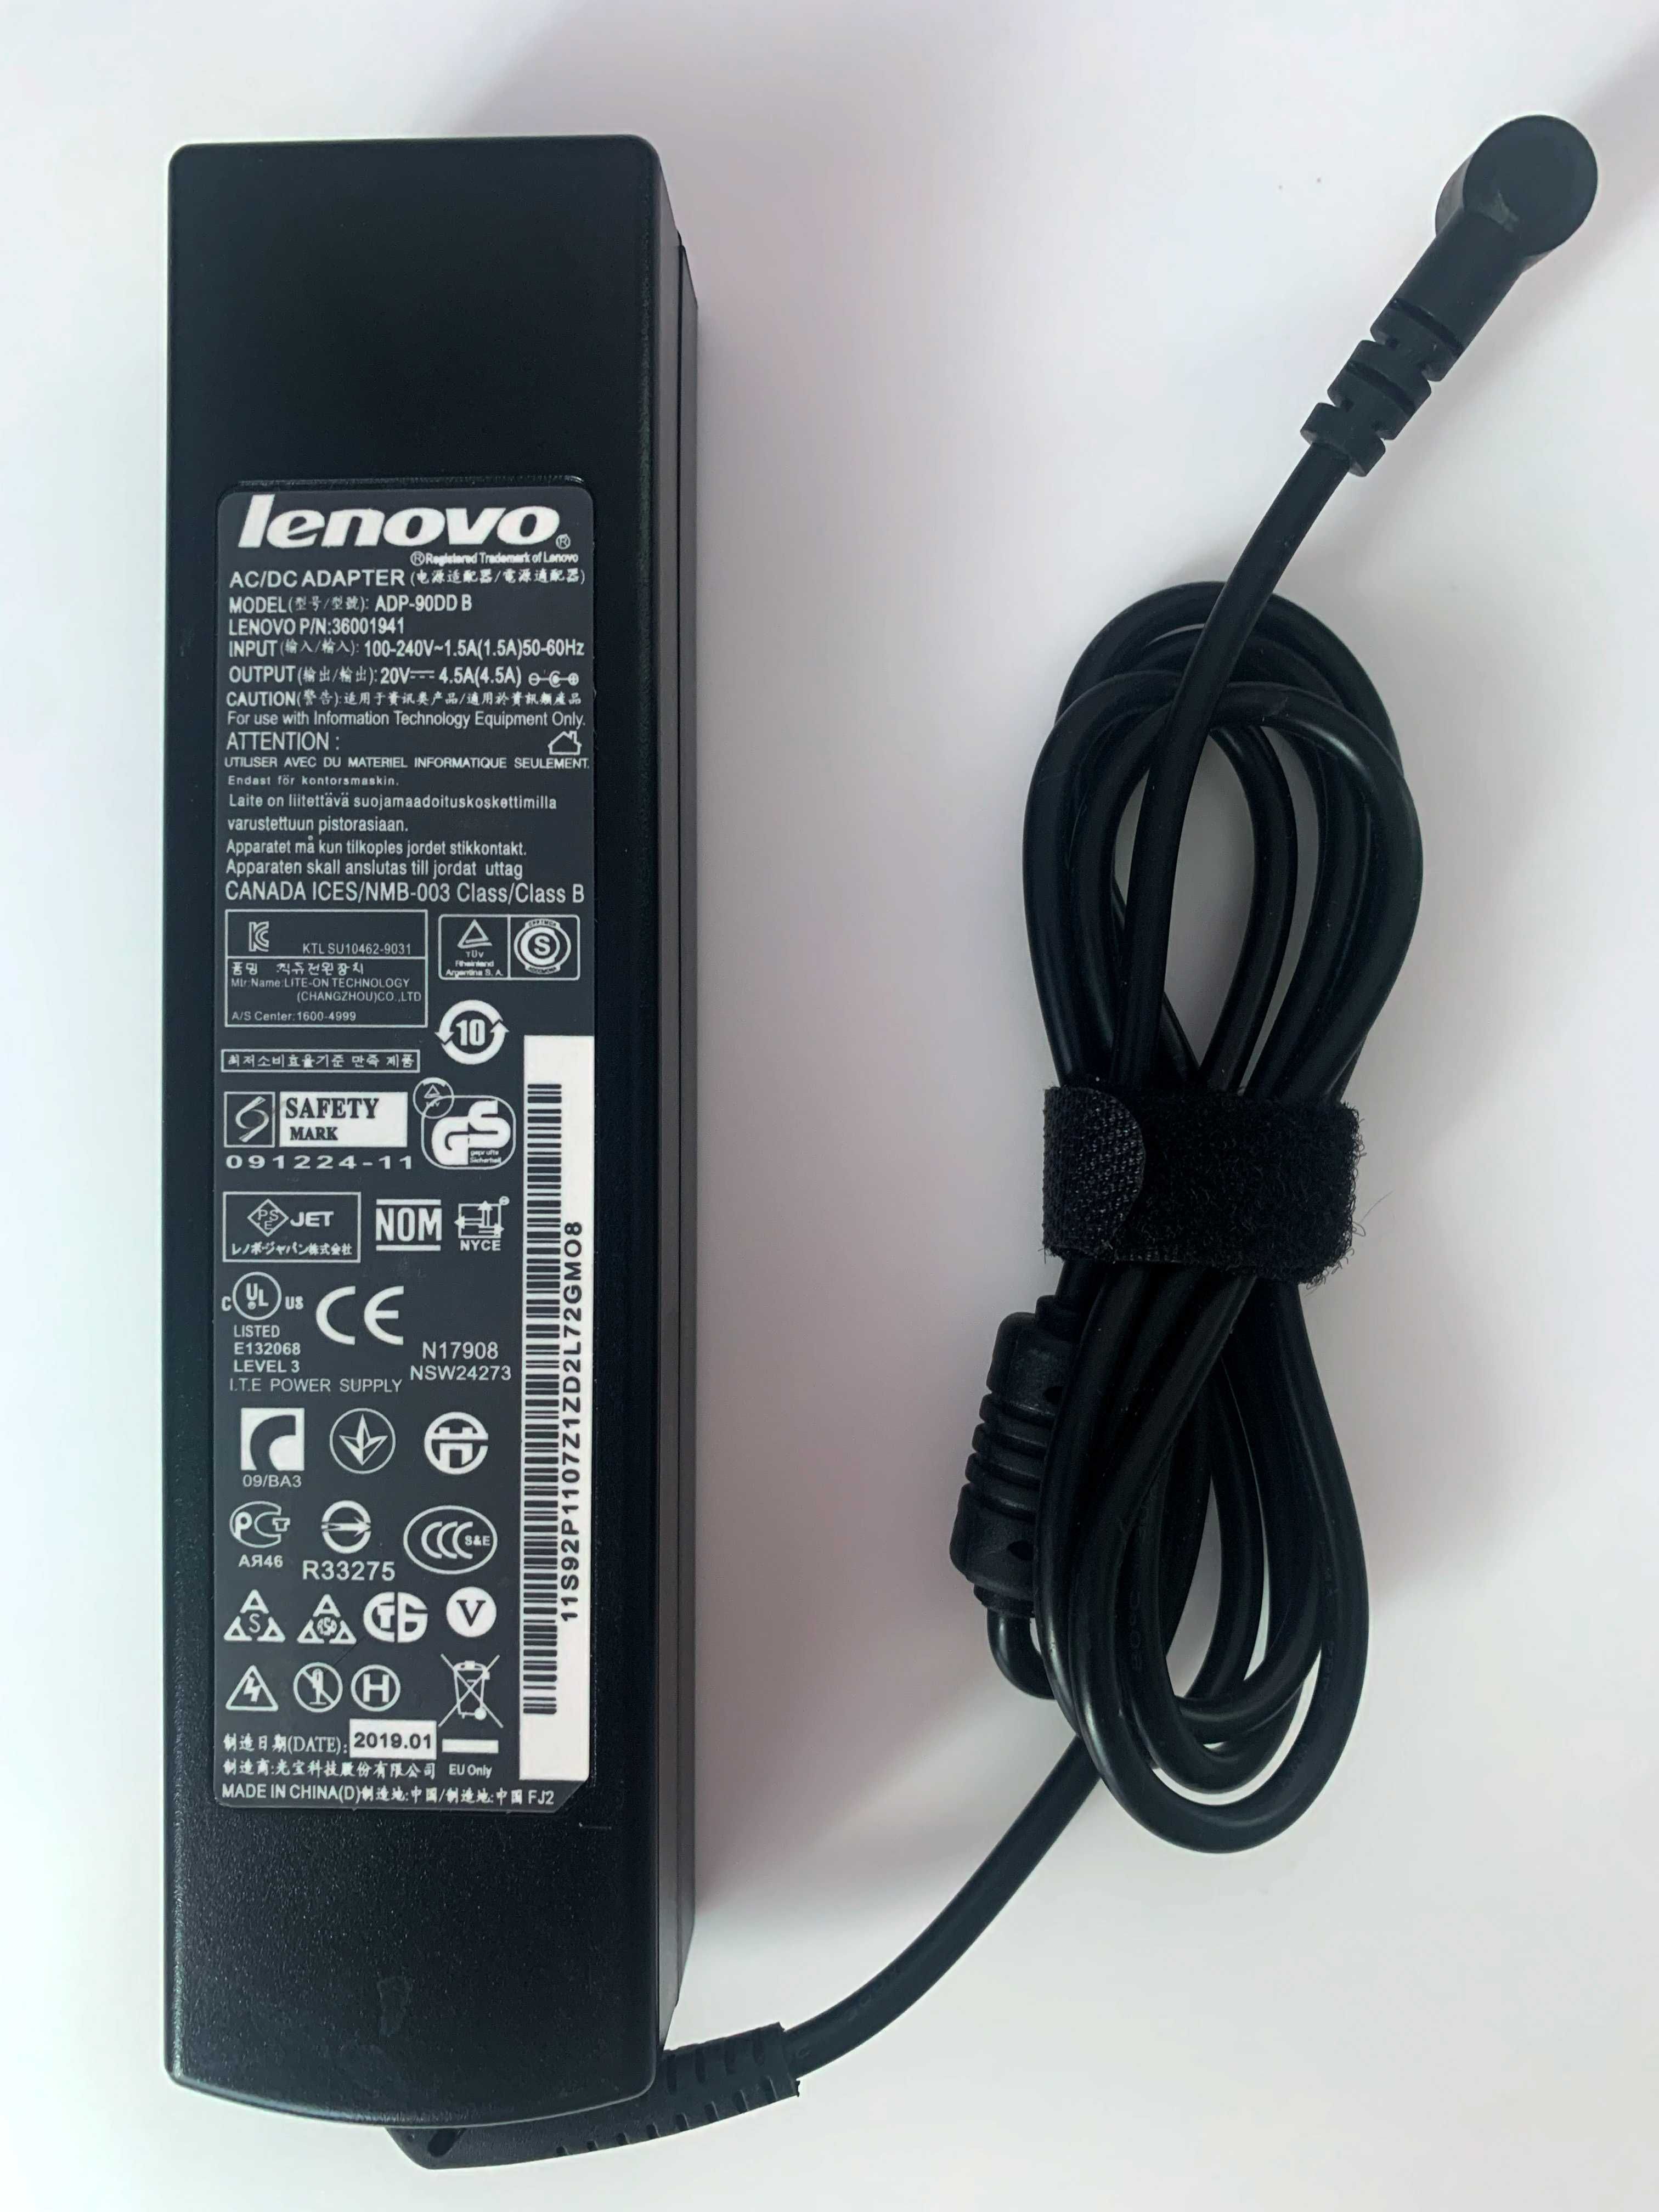 Блок питания Lenovo ADP-90DD